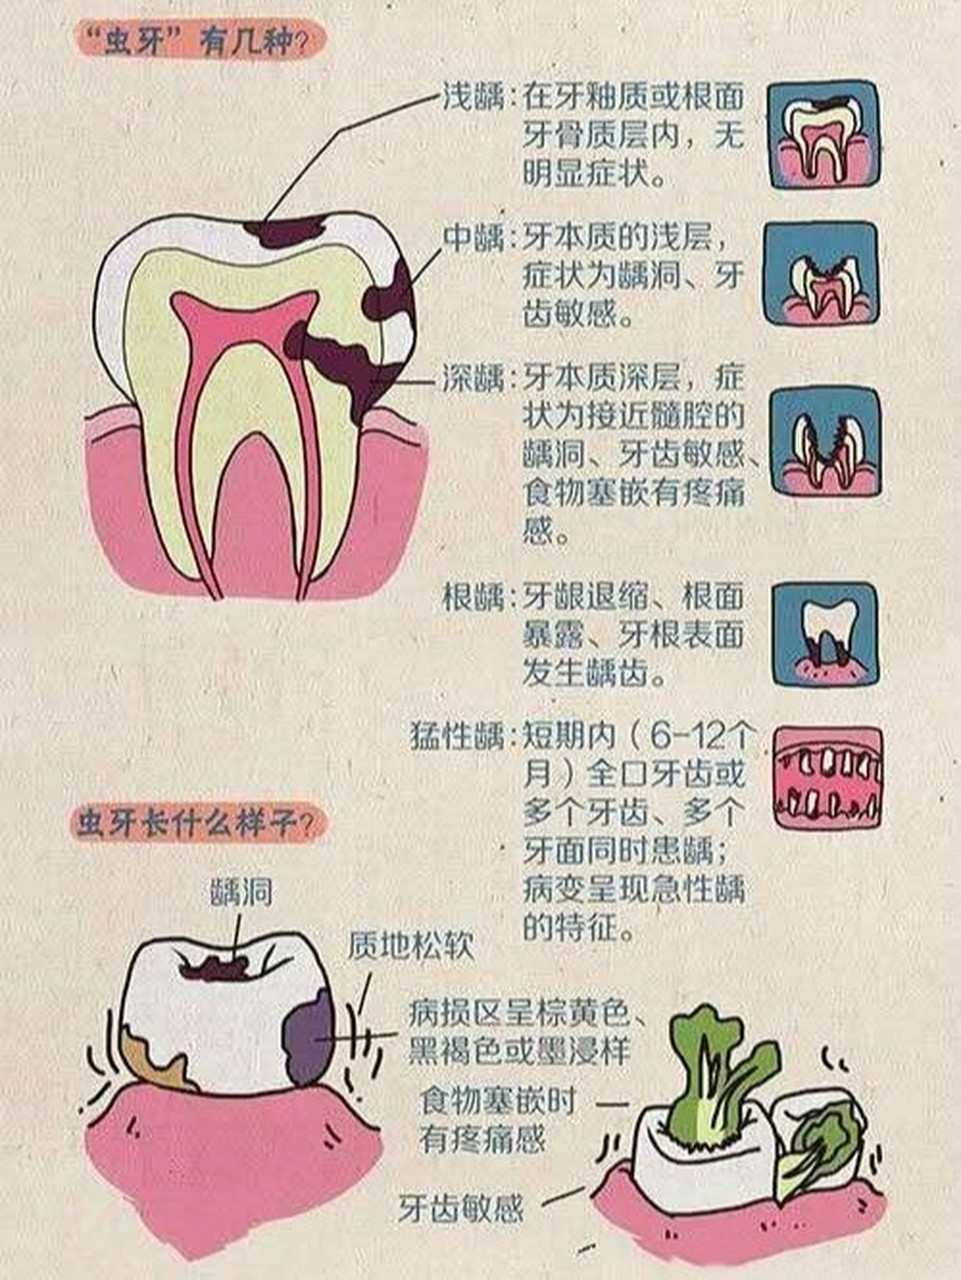 牙齿咬合面有黑线,大牙一般最常见,说明开始蛀牙了,牙釉质被细菌 龋坏